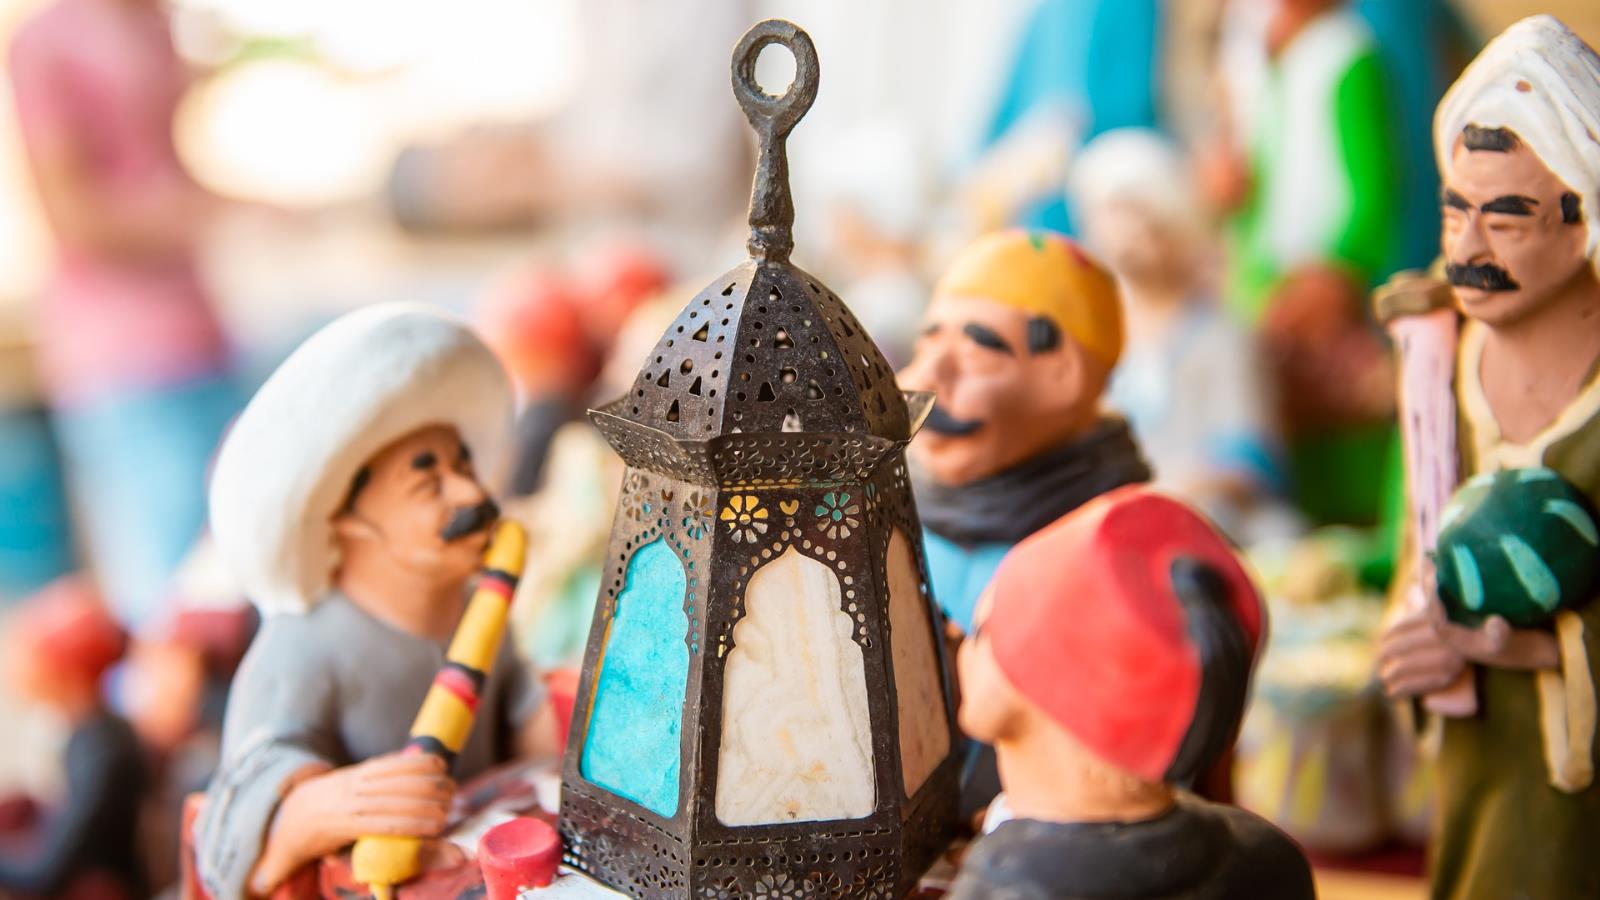 المصريون أول من استخدم المدفع والإمساكية لمواقيت الصيام في رمضان (بيكسابي)